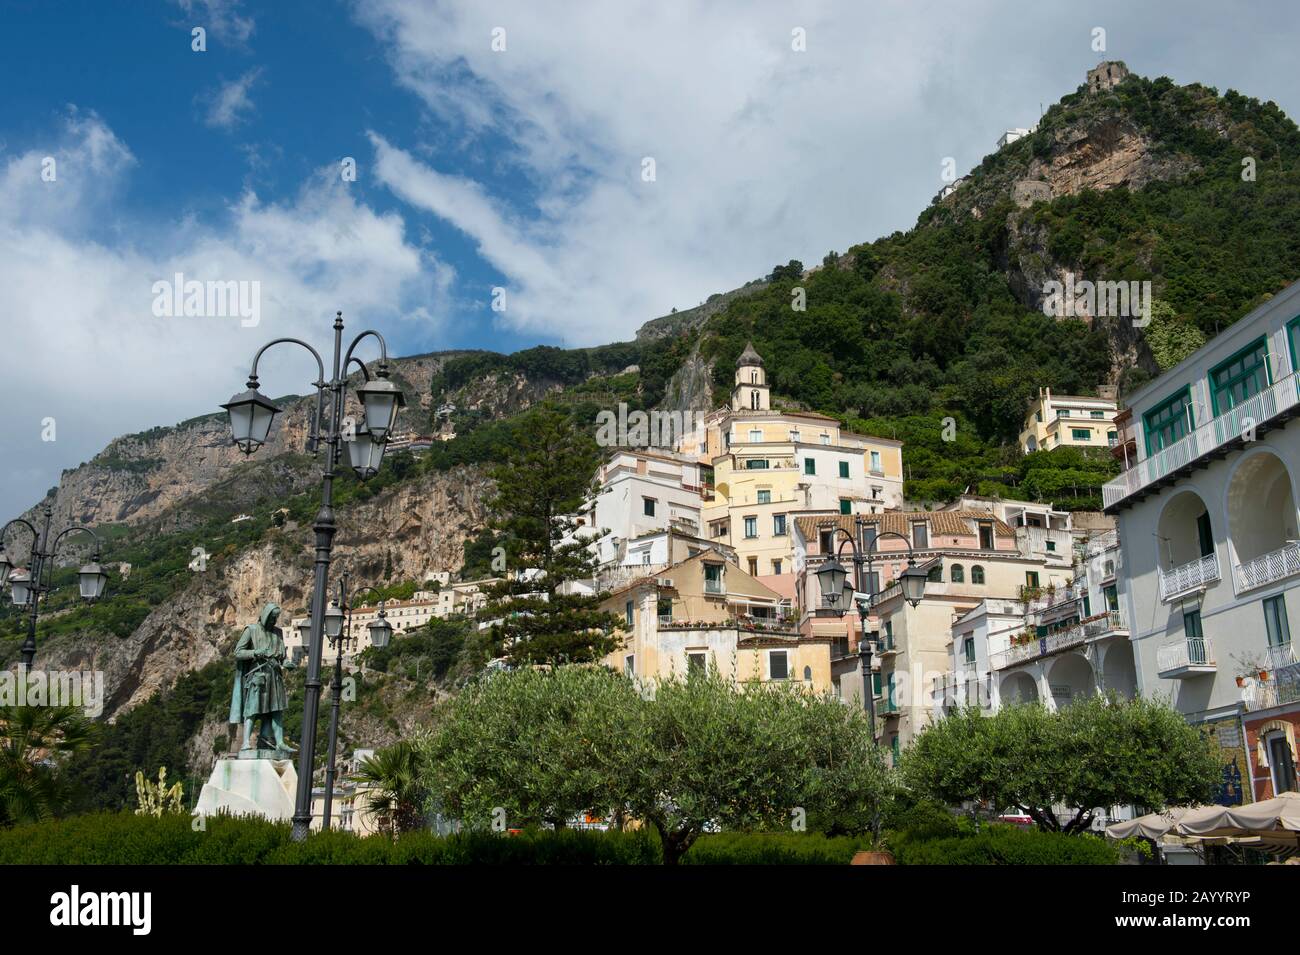 Le centre-ville d'Amalfi dans la province de Salerne dans la région de Campanie au sud-ouest de l'Italie, situé sur la côte amalfitaine. Banque D'Images